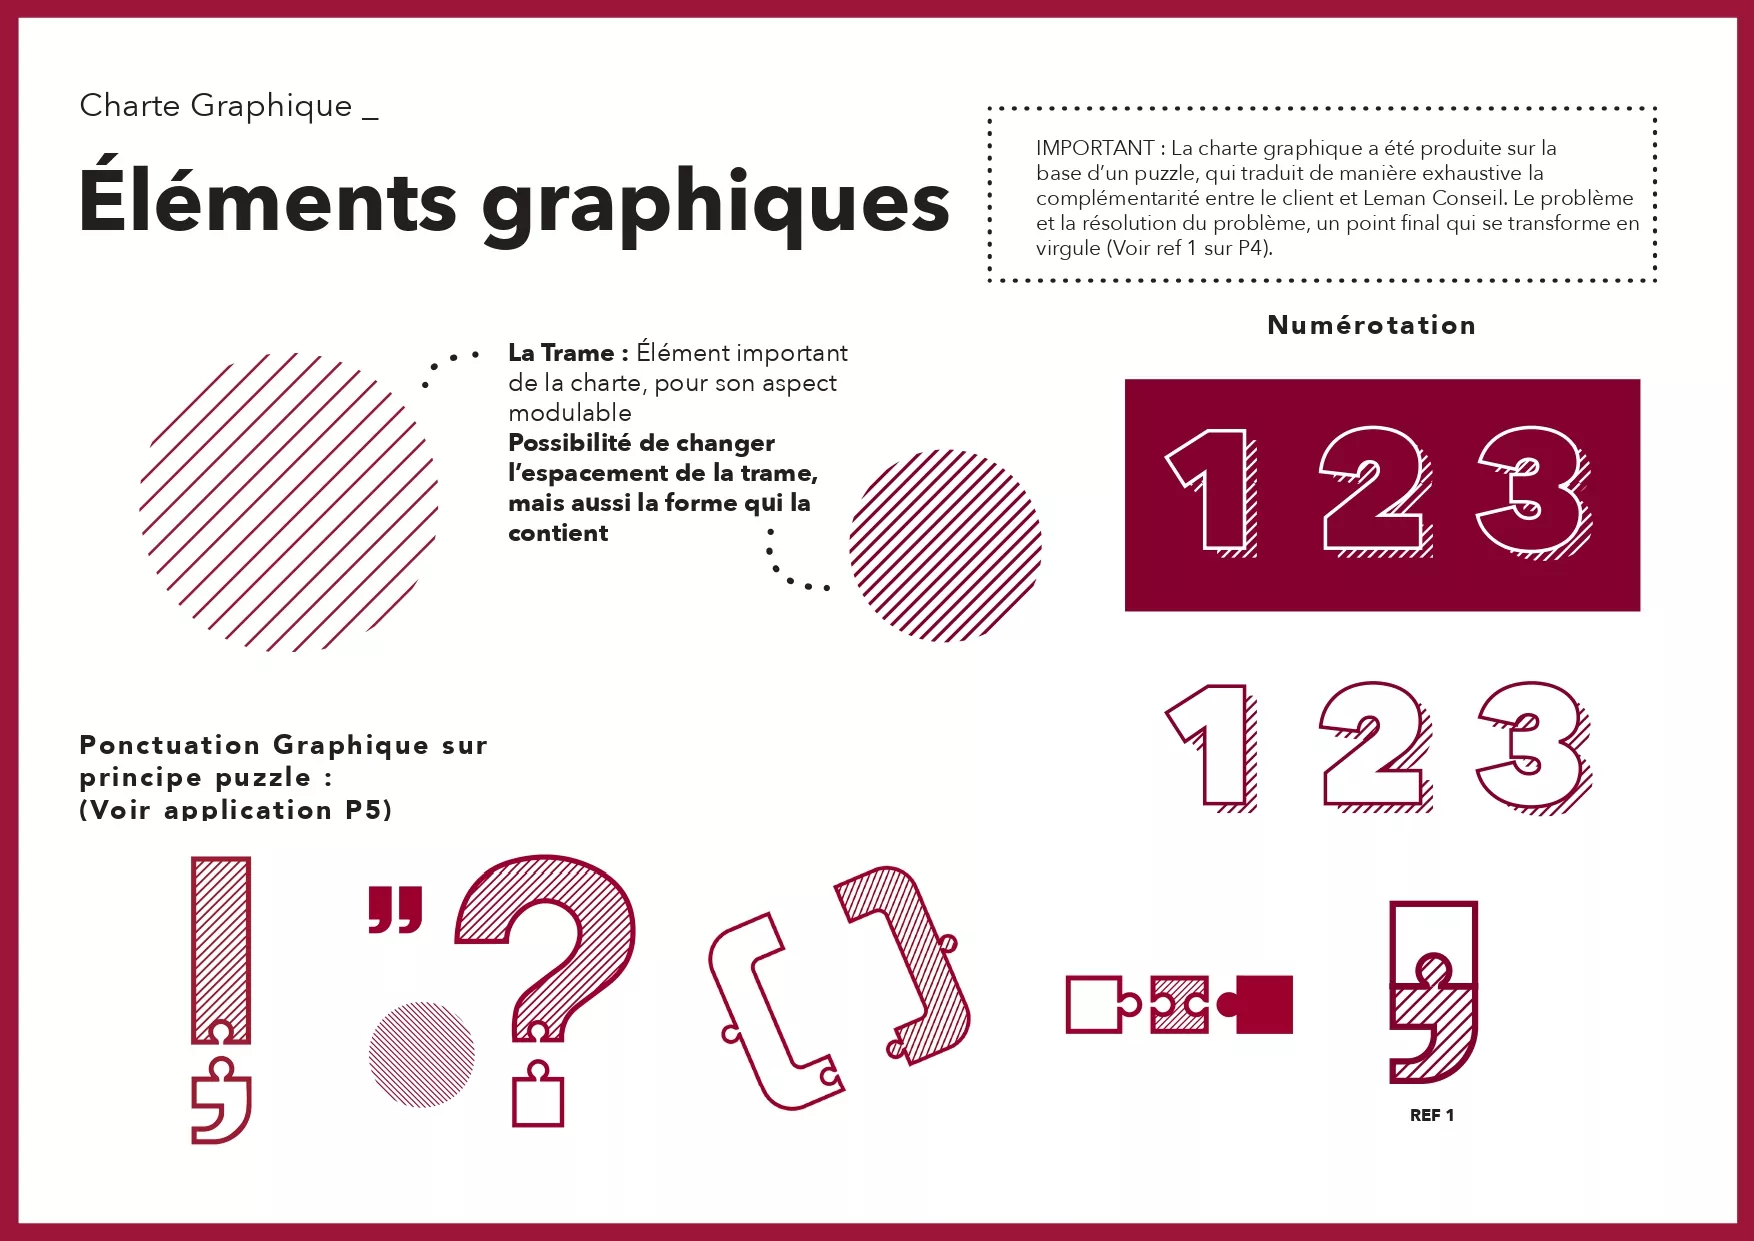 Charte graphique - LEMAN CONSEIL_page-0005